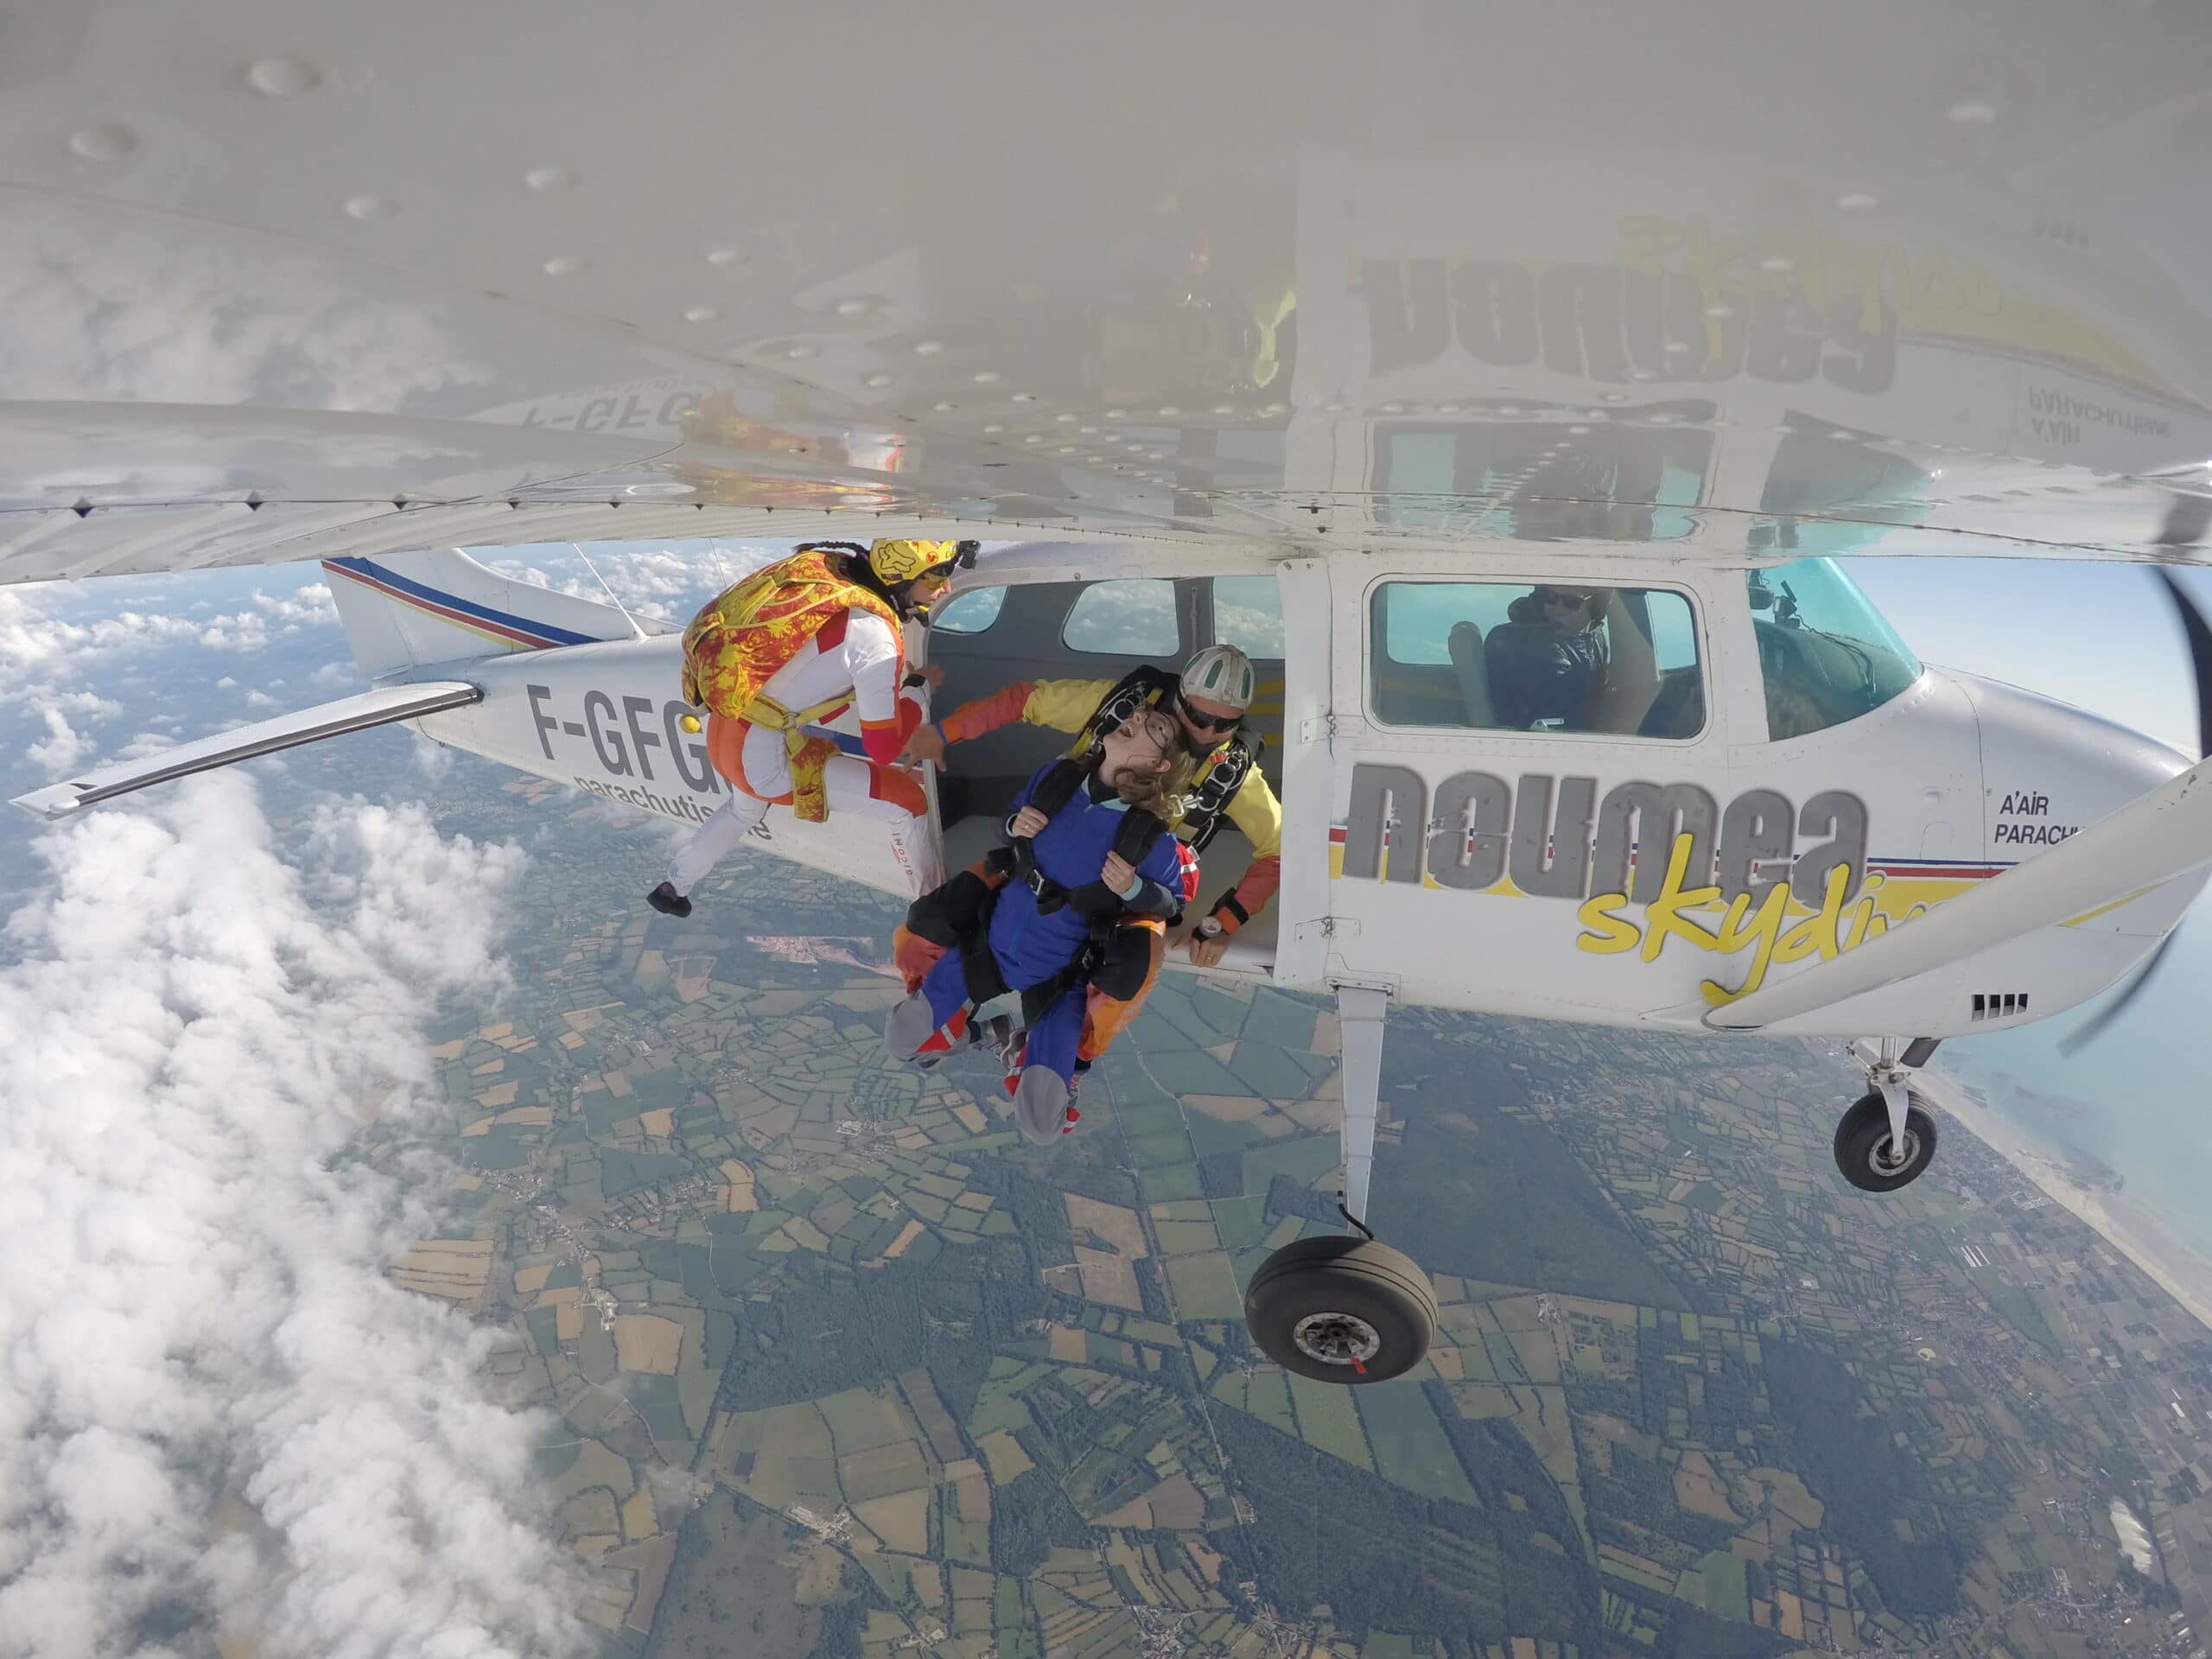 Baptême de chute libre en Normandie avec Aair parachutisme Lessay. Sortie d'avion avec notre vidéowoman Élodie !